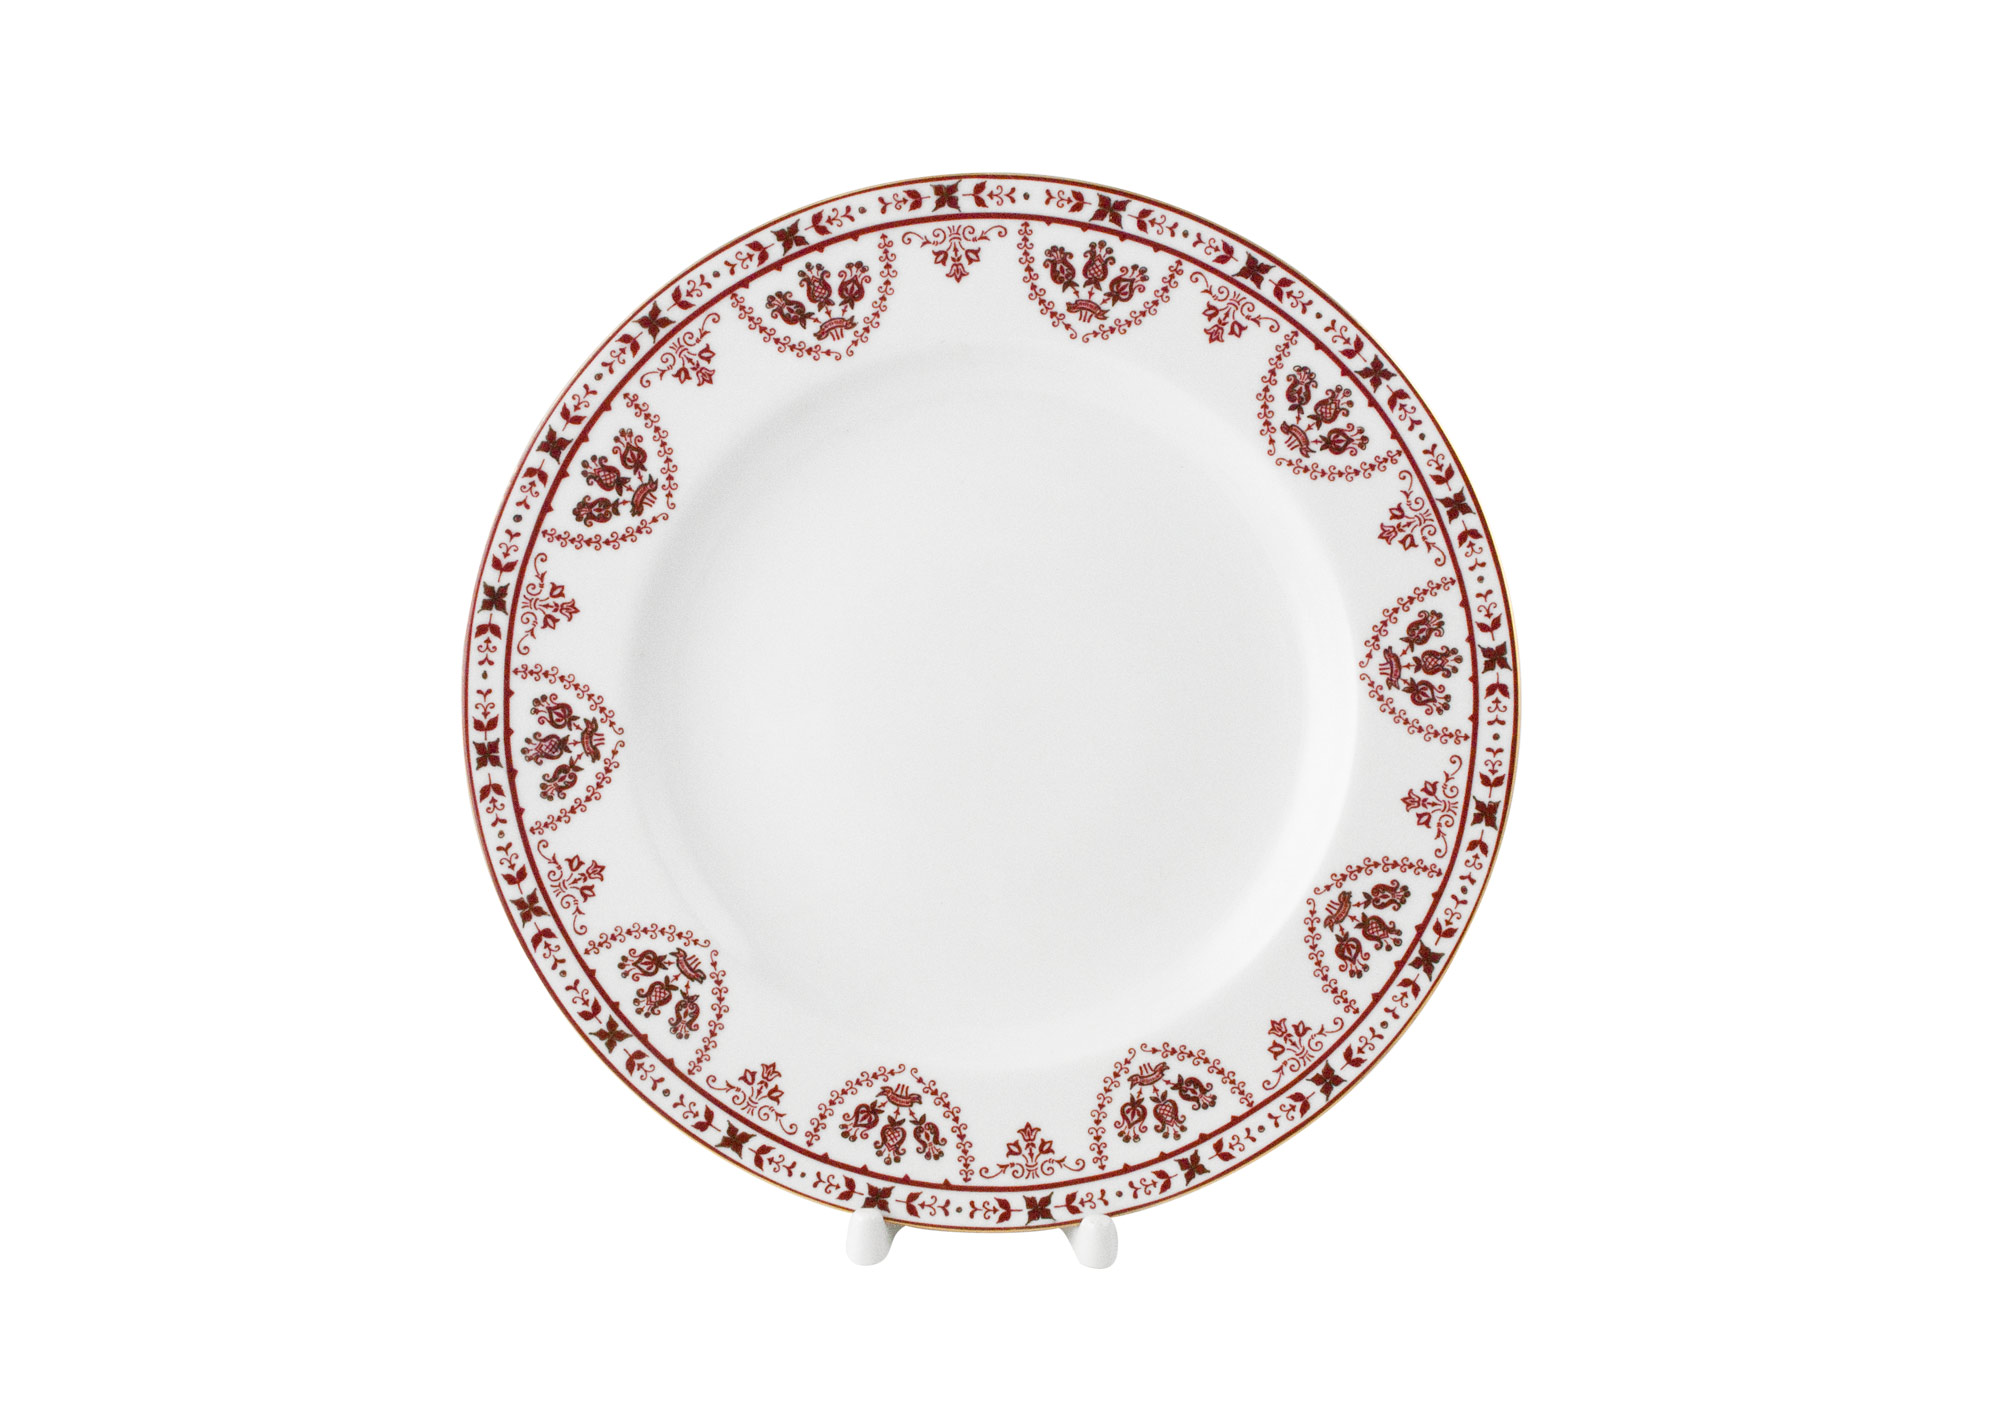 Buy Terracotta Frieze Dinner Plate 10 3/4" at GoldenCockerel.com